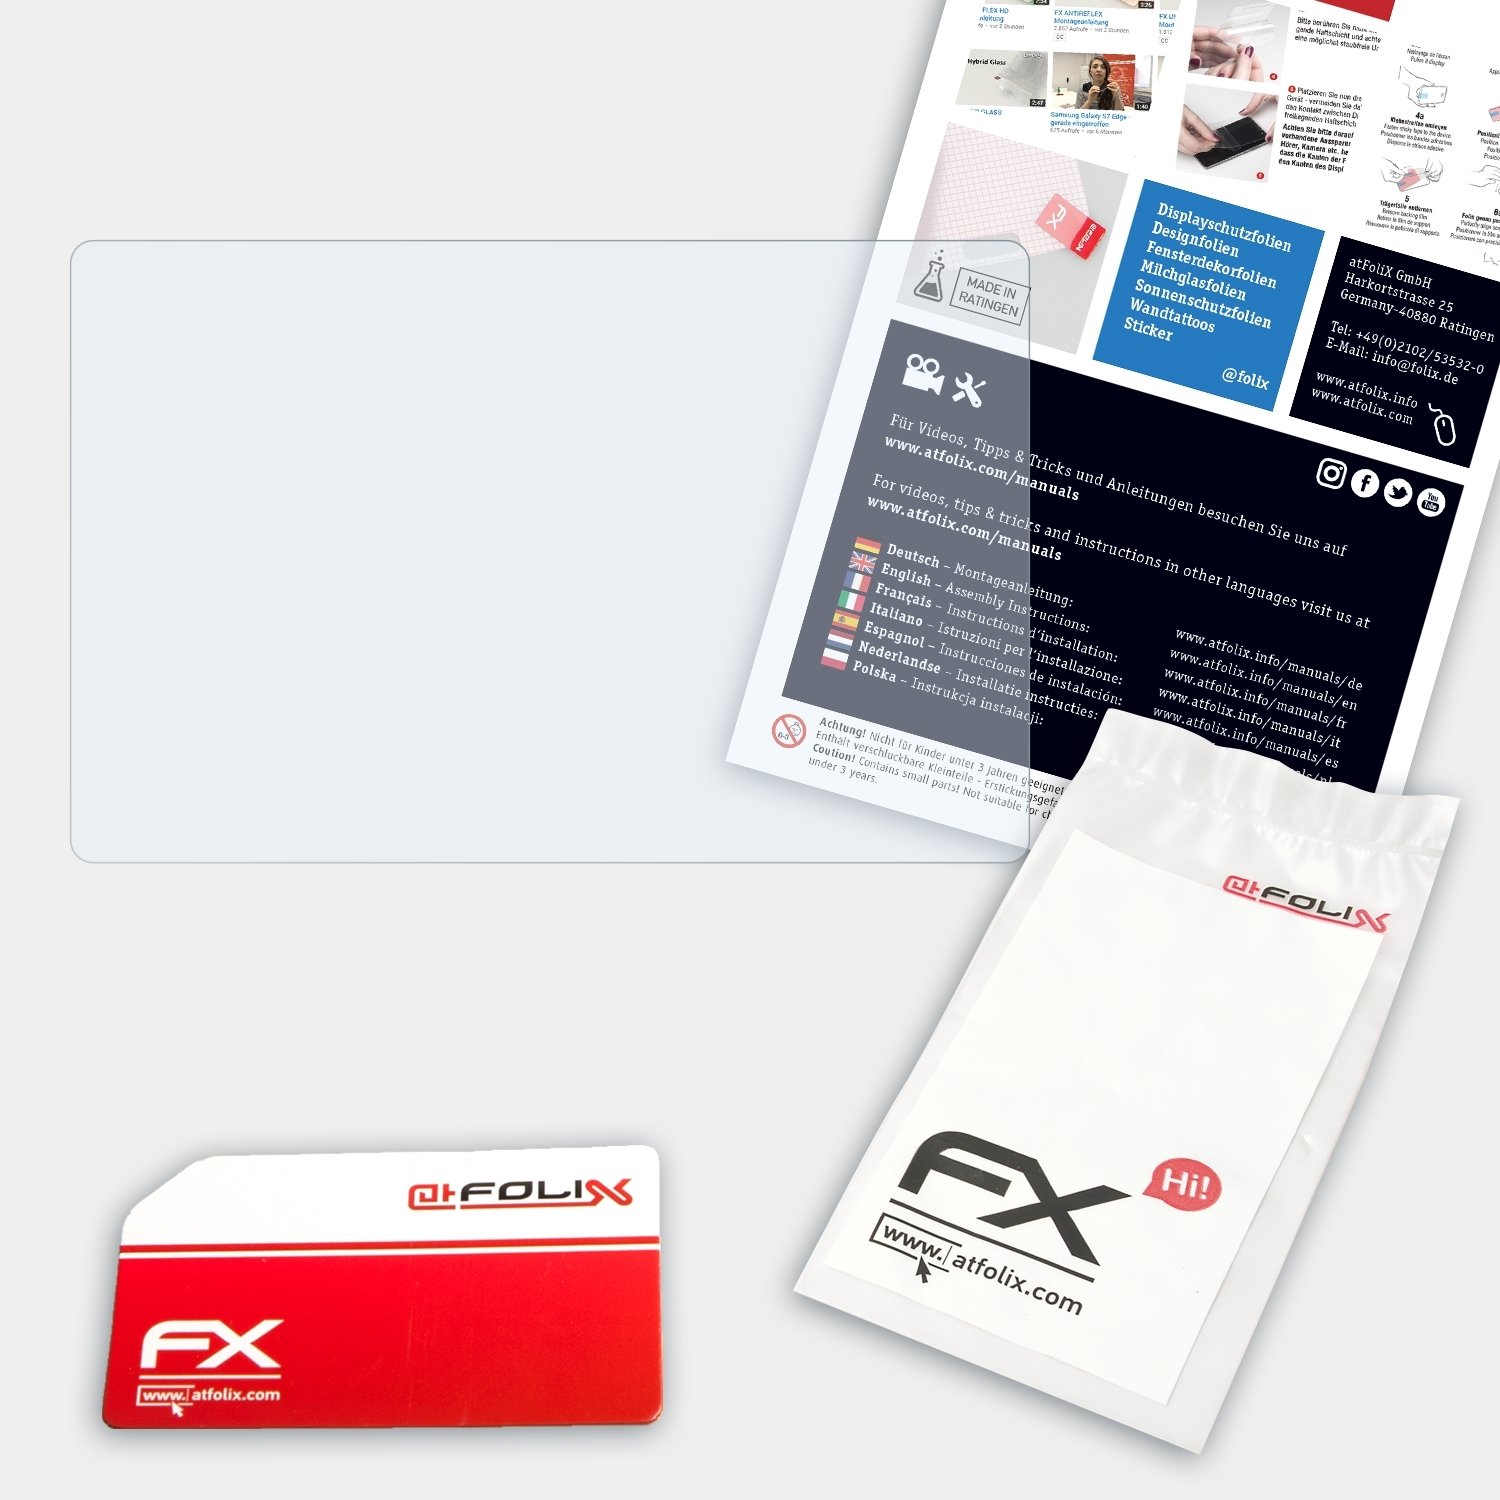 PiPo FX-Clear X10 ATFOLIX Displayschutz(für Pro)